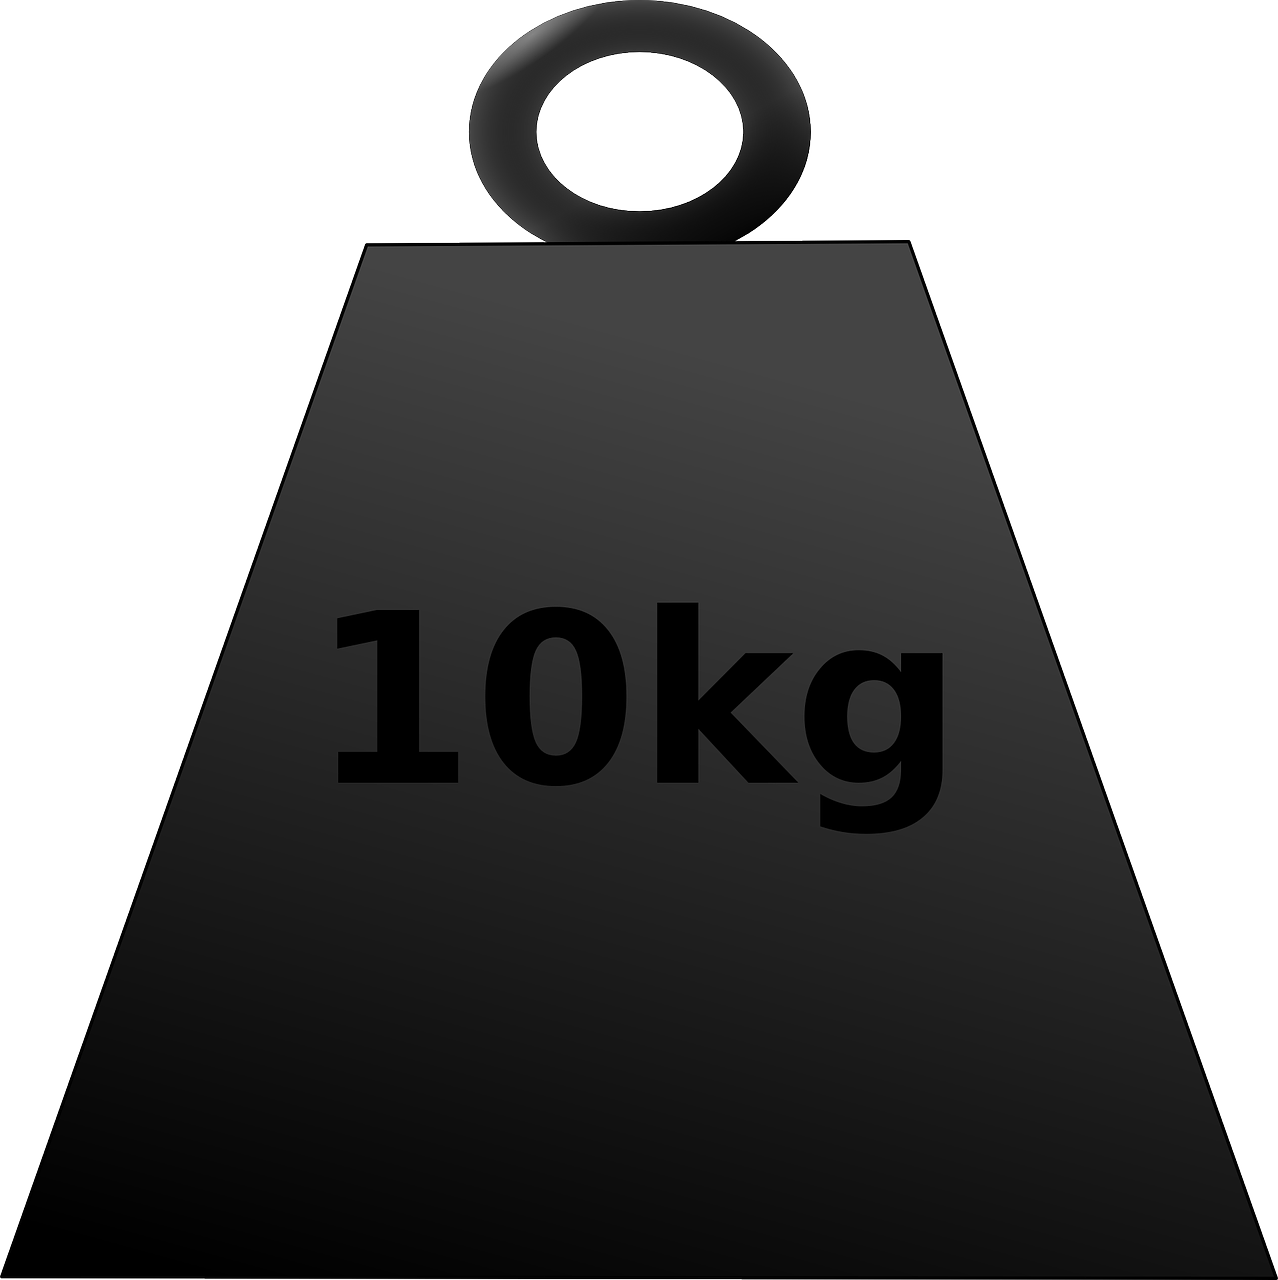 weight kilograms 10 free photo